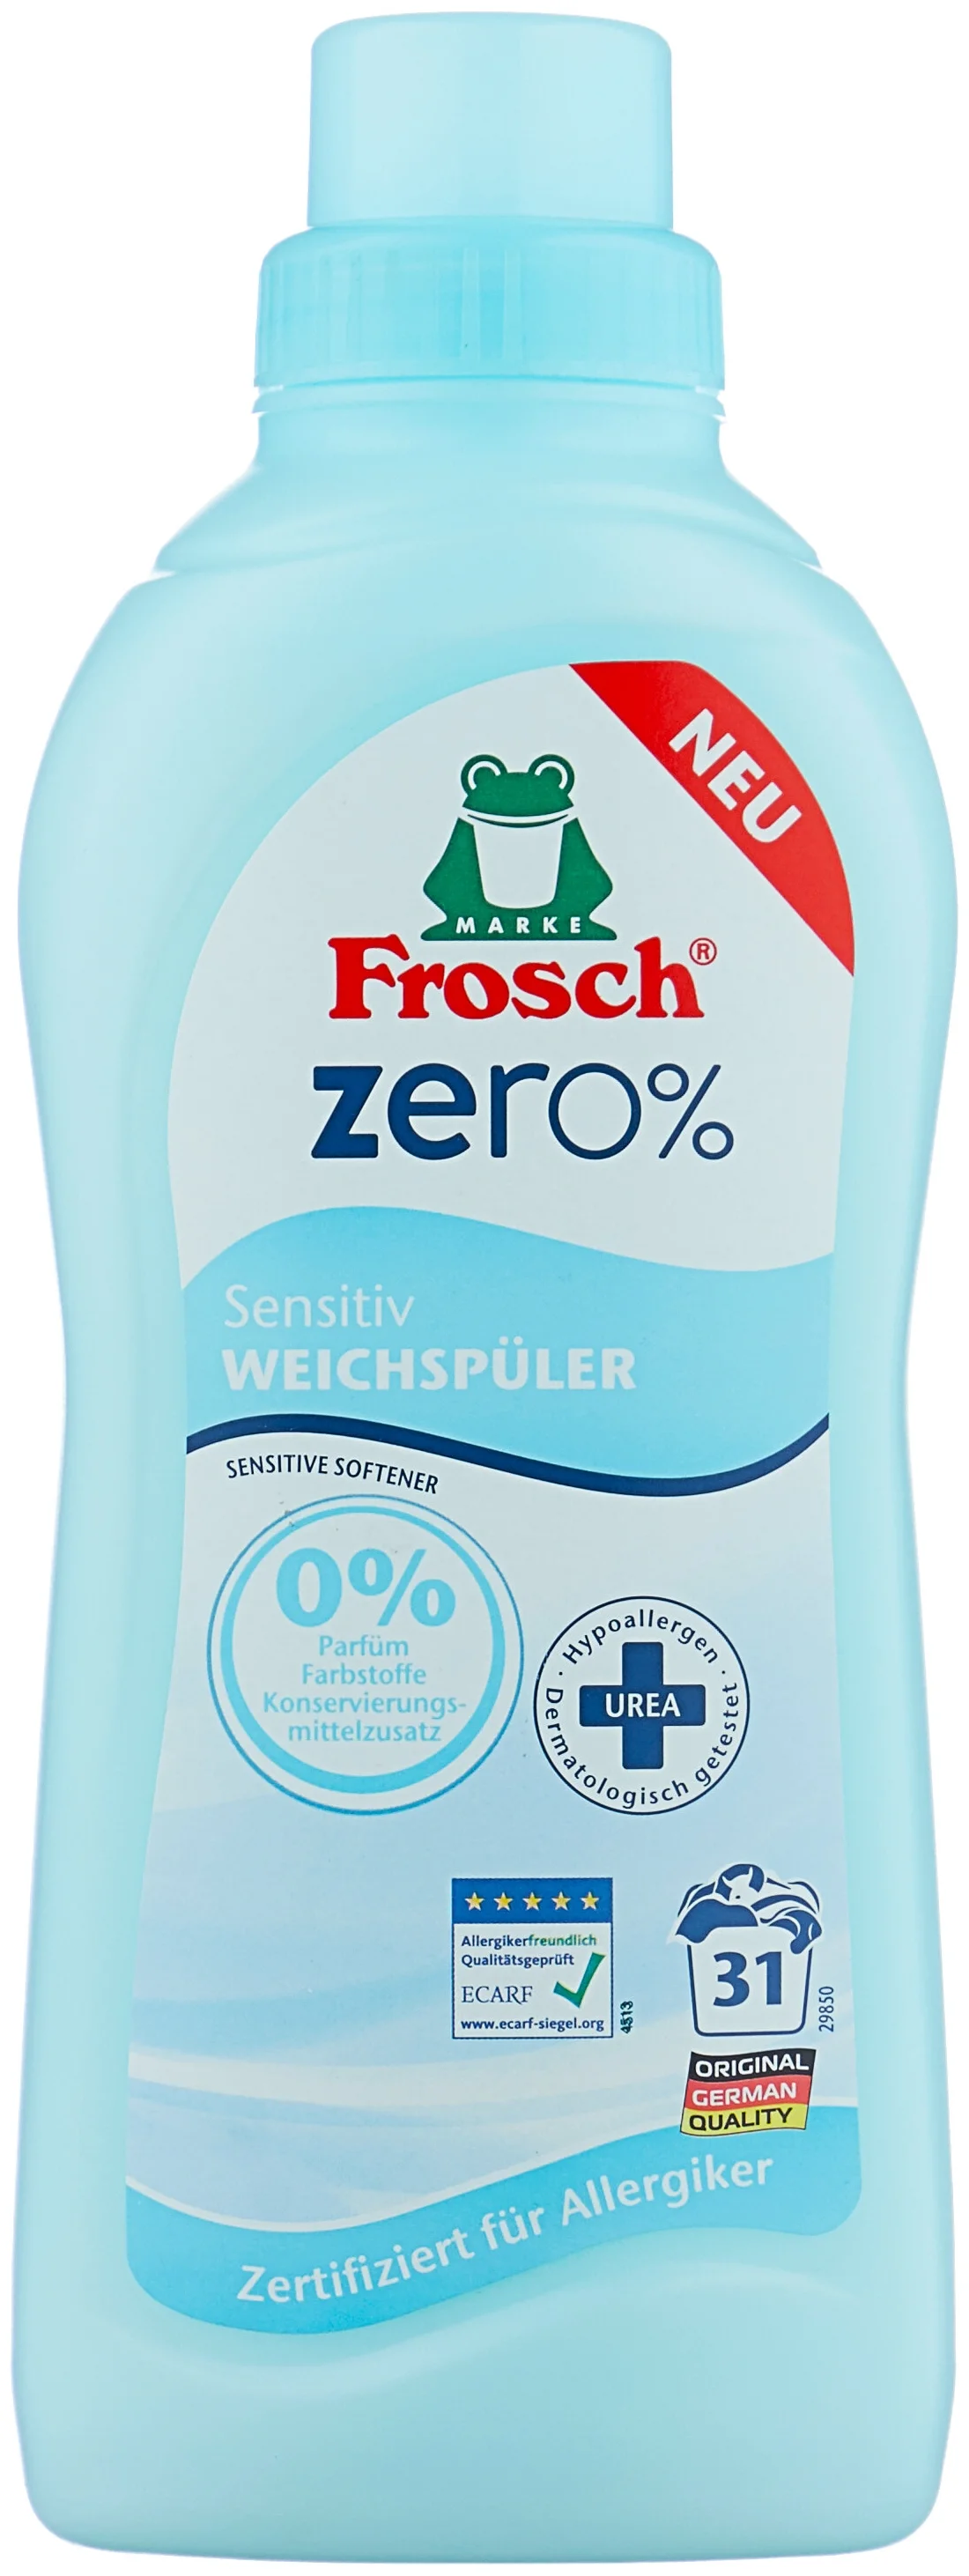 Frosch Zero Sensitiv - назначение: для шерсти и шелка, для детского белья, для нижнего белья, для хлопковых тканей, для цветных тканей, для синтетических тканей, для белых и светлых тканей, для черных и темных тканей